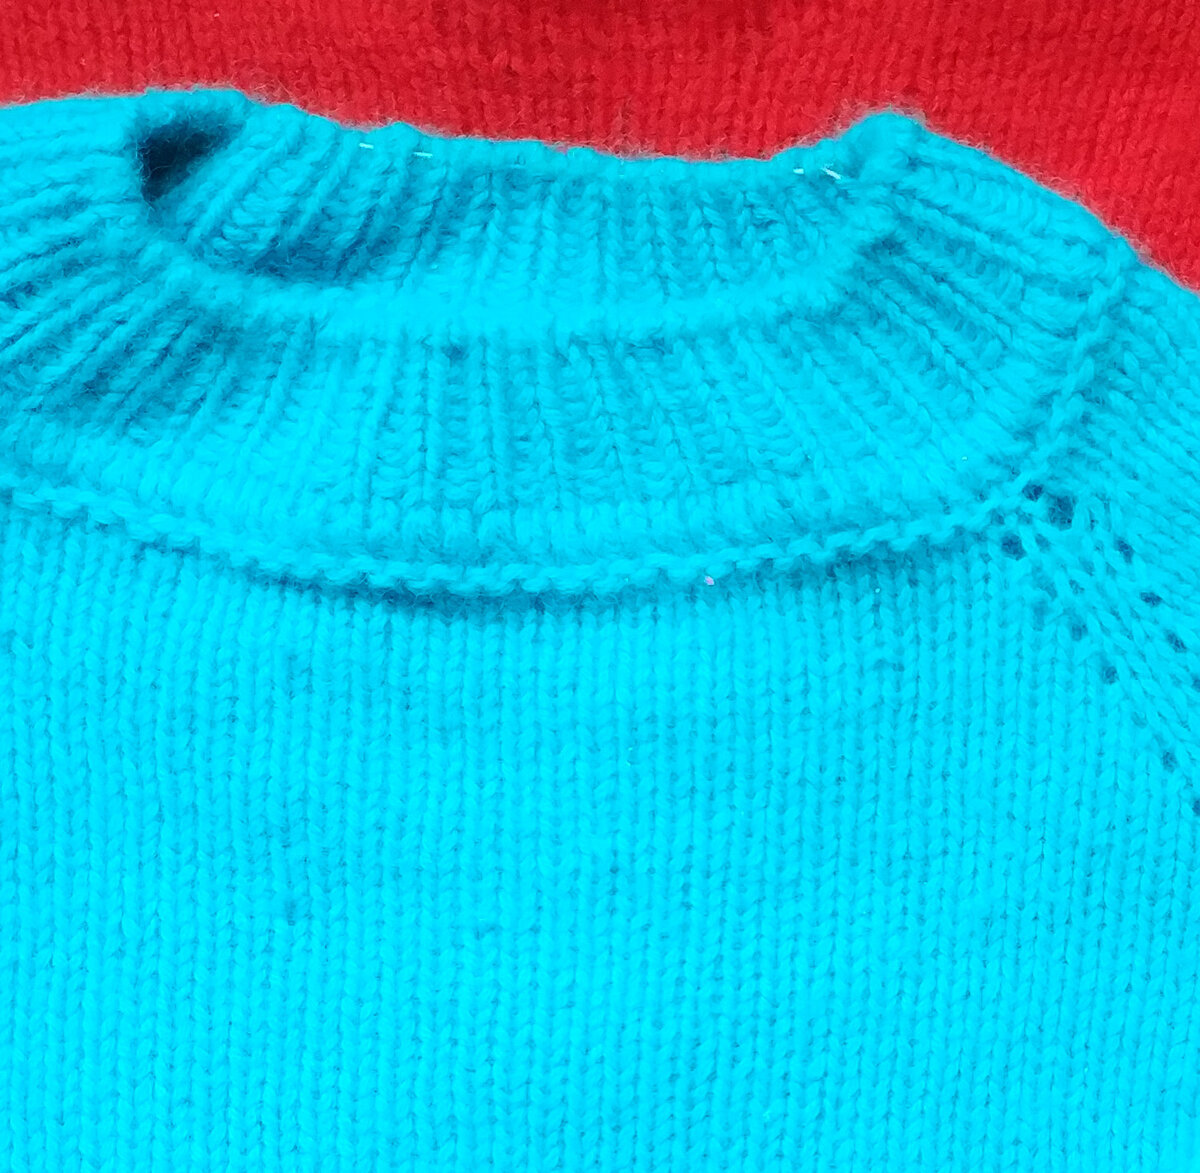 Как связать горловину у свитера